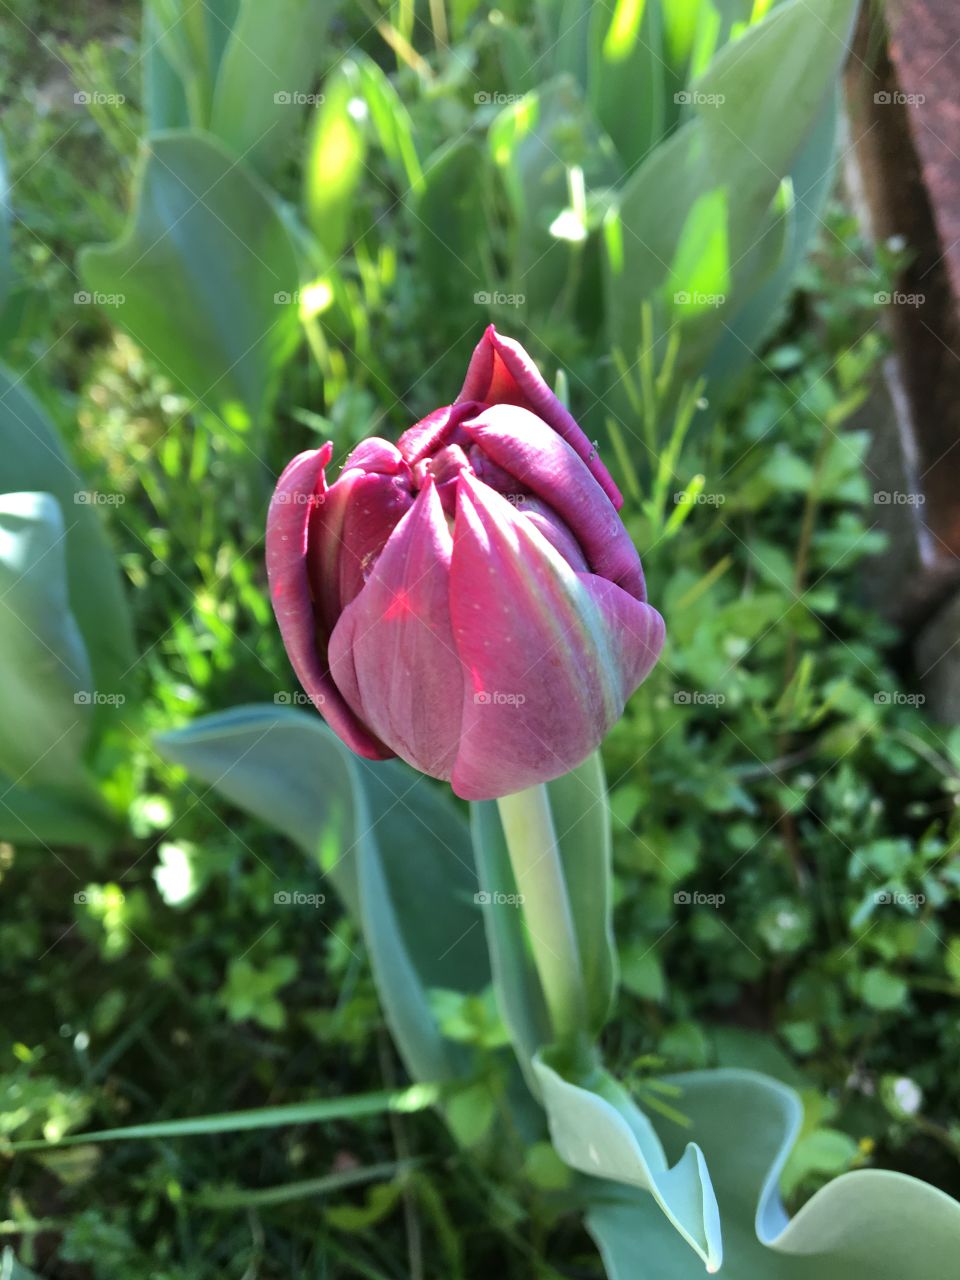 Spring tulip